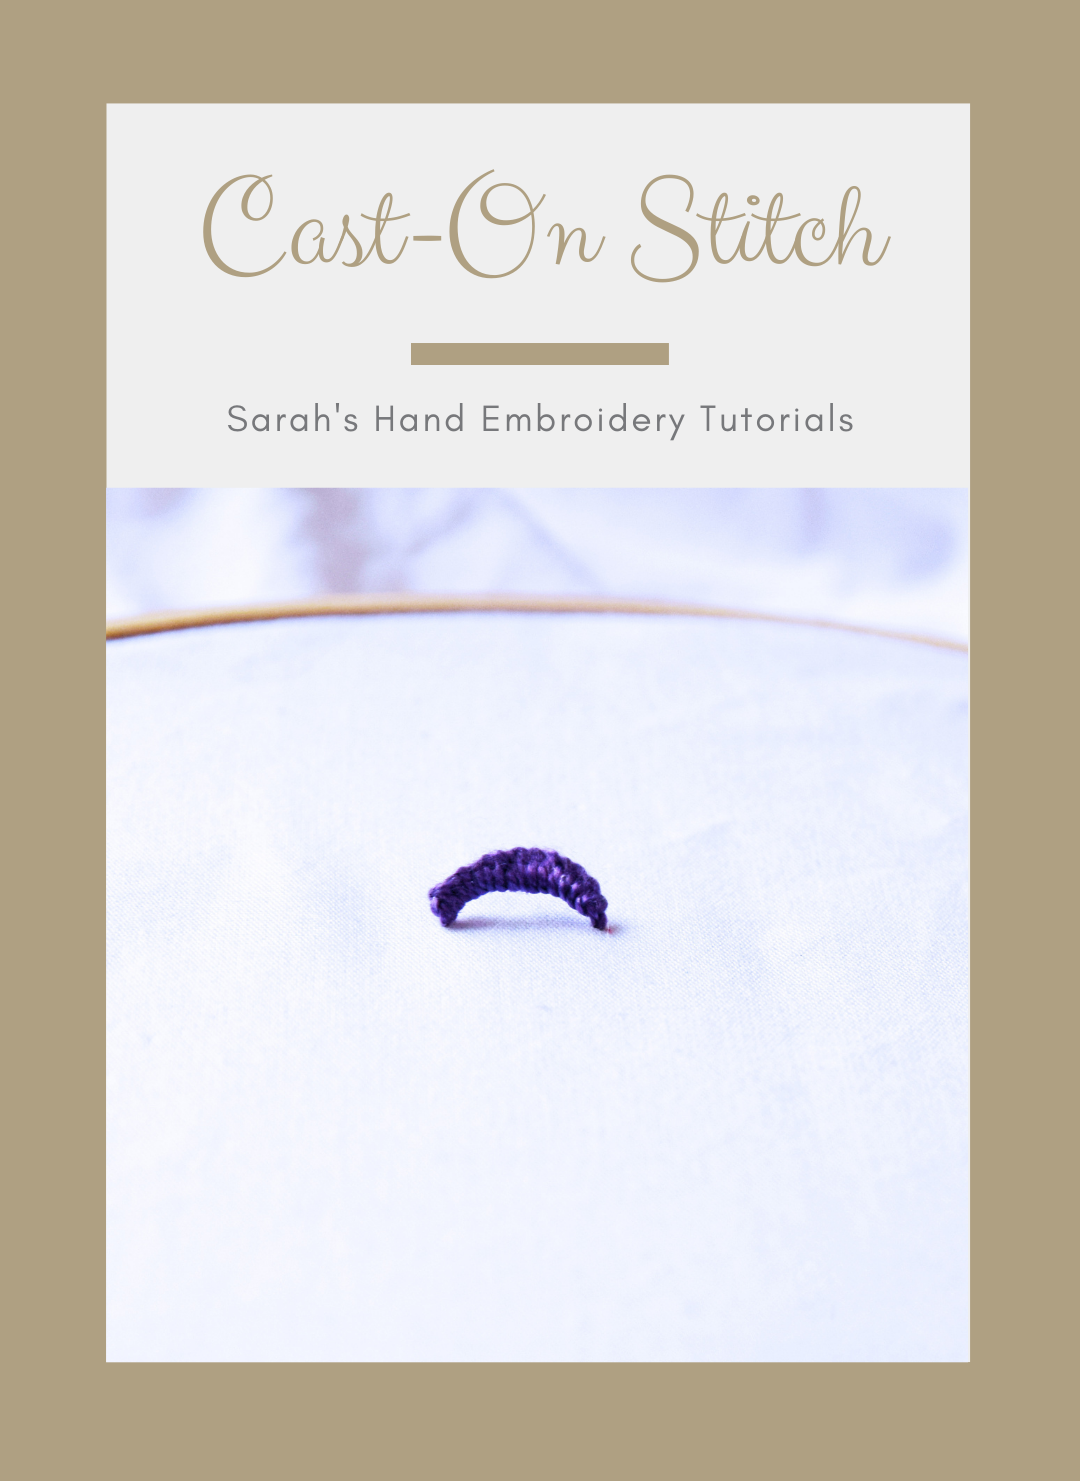 Cast-on stitch & cast-on stitch rose tutorial - Stitch Floral